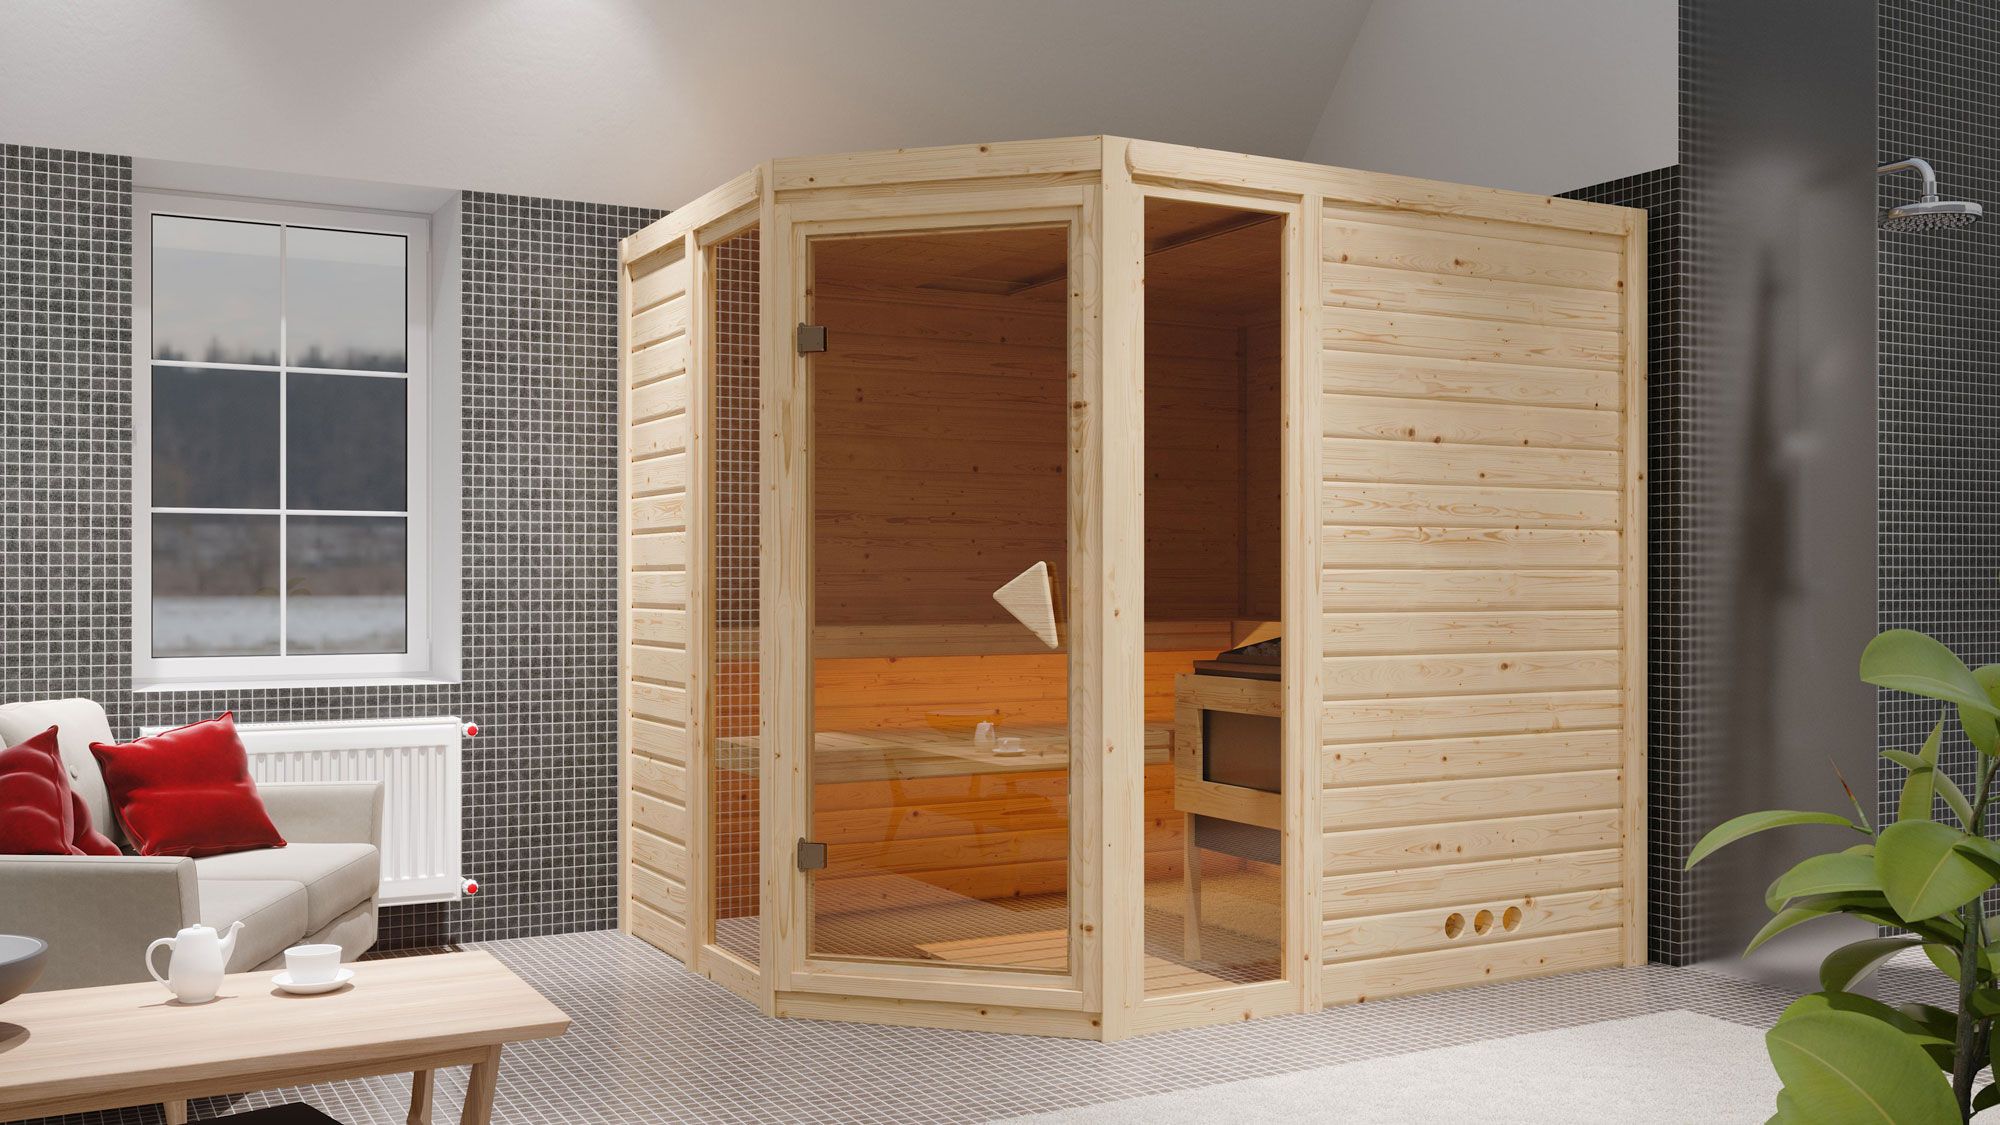 Sauna "Sunniva 3" SET mit bronzierter Tür & Ofen 9 kW Edelstahl - 236 x 184 x 209 cm (B x T x H)